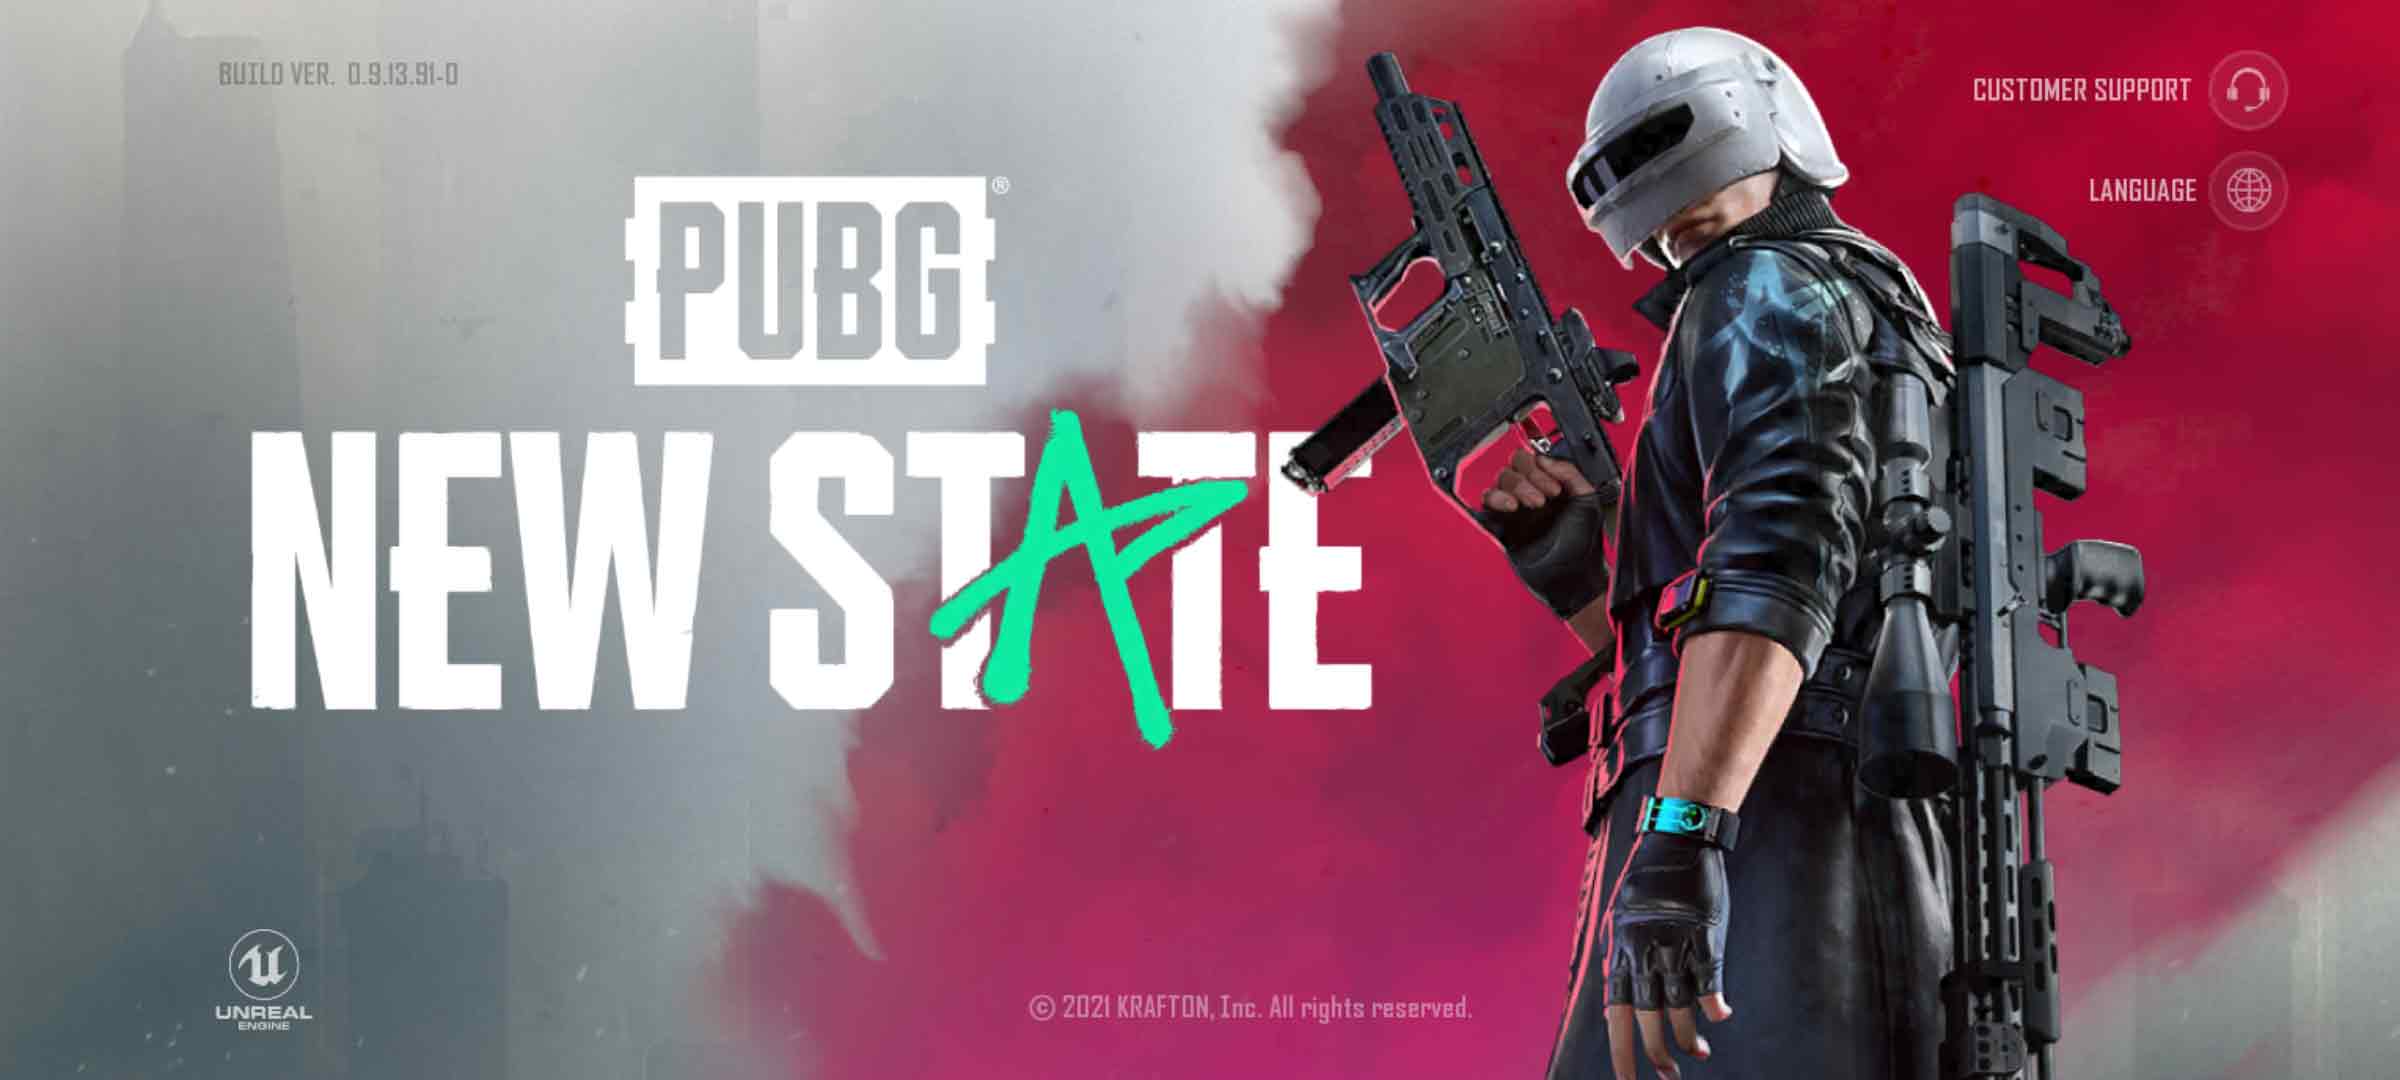 pubg new state new update